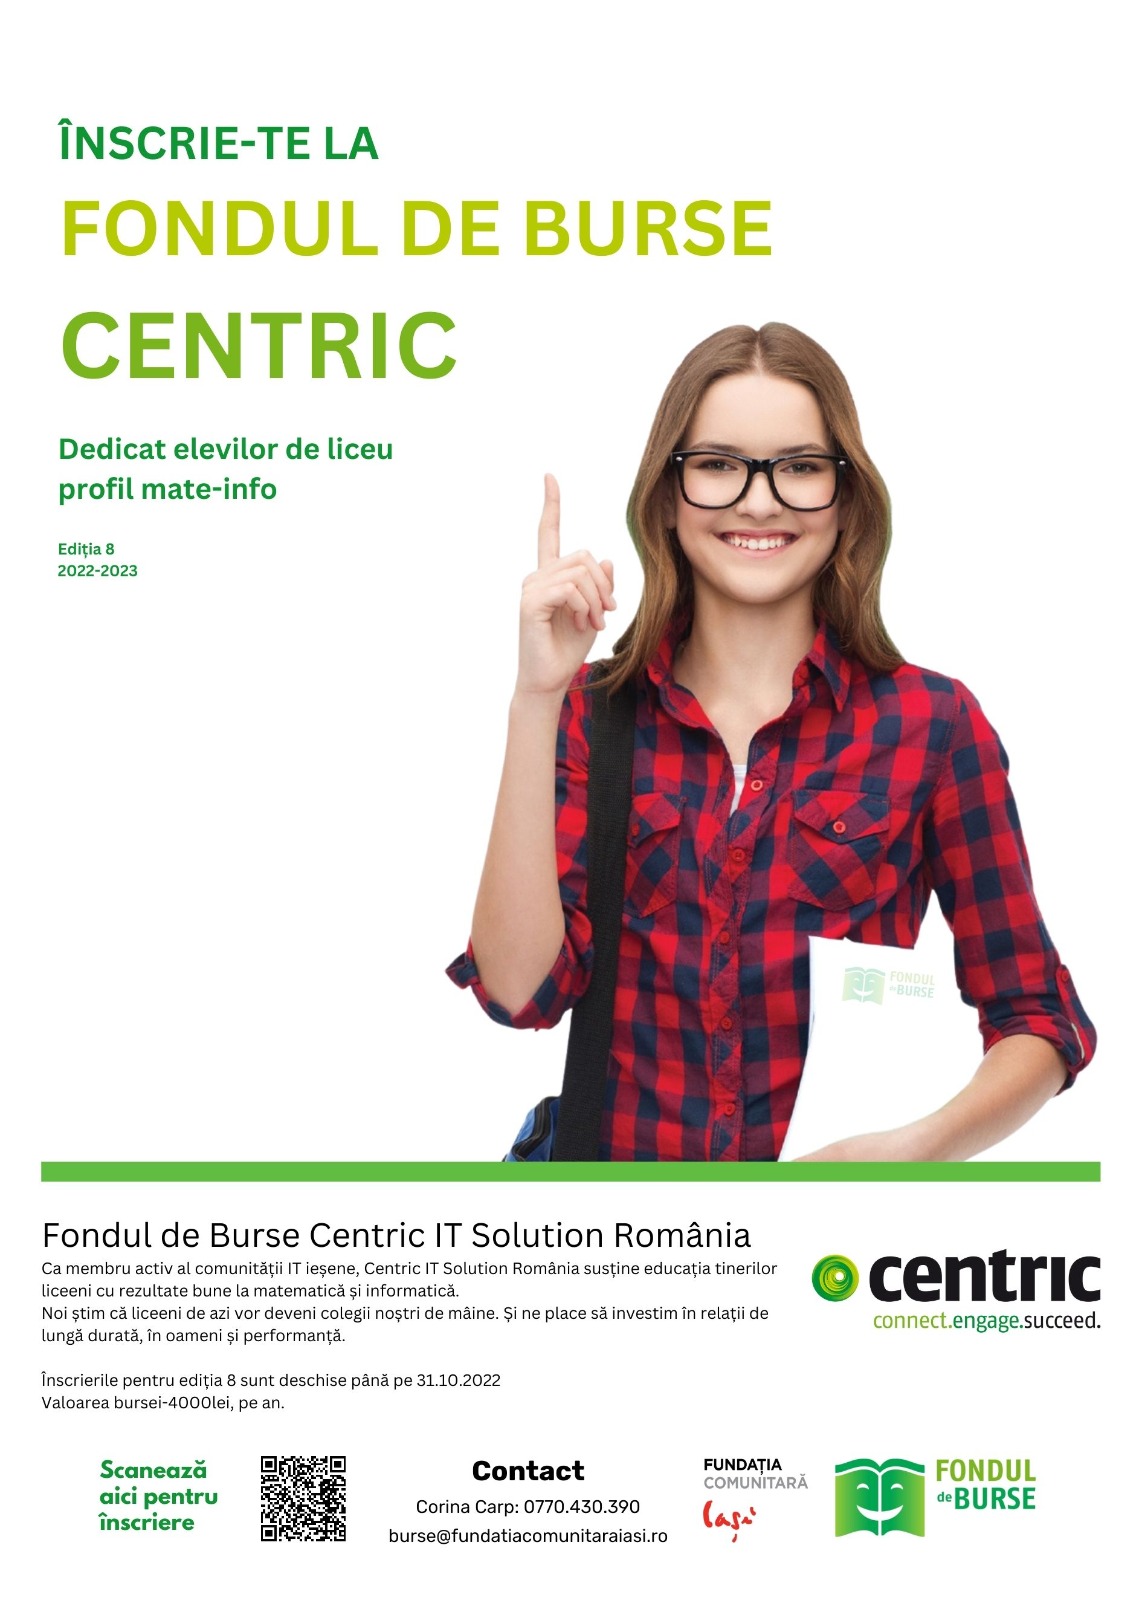 Centric IT Solutions România a acordat încă 15 burse elevilor ieșeni